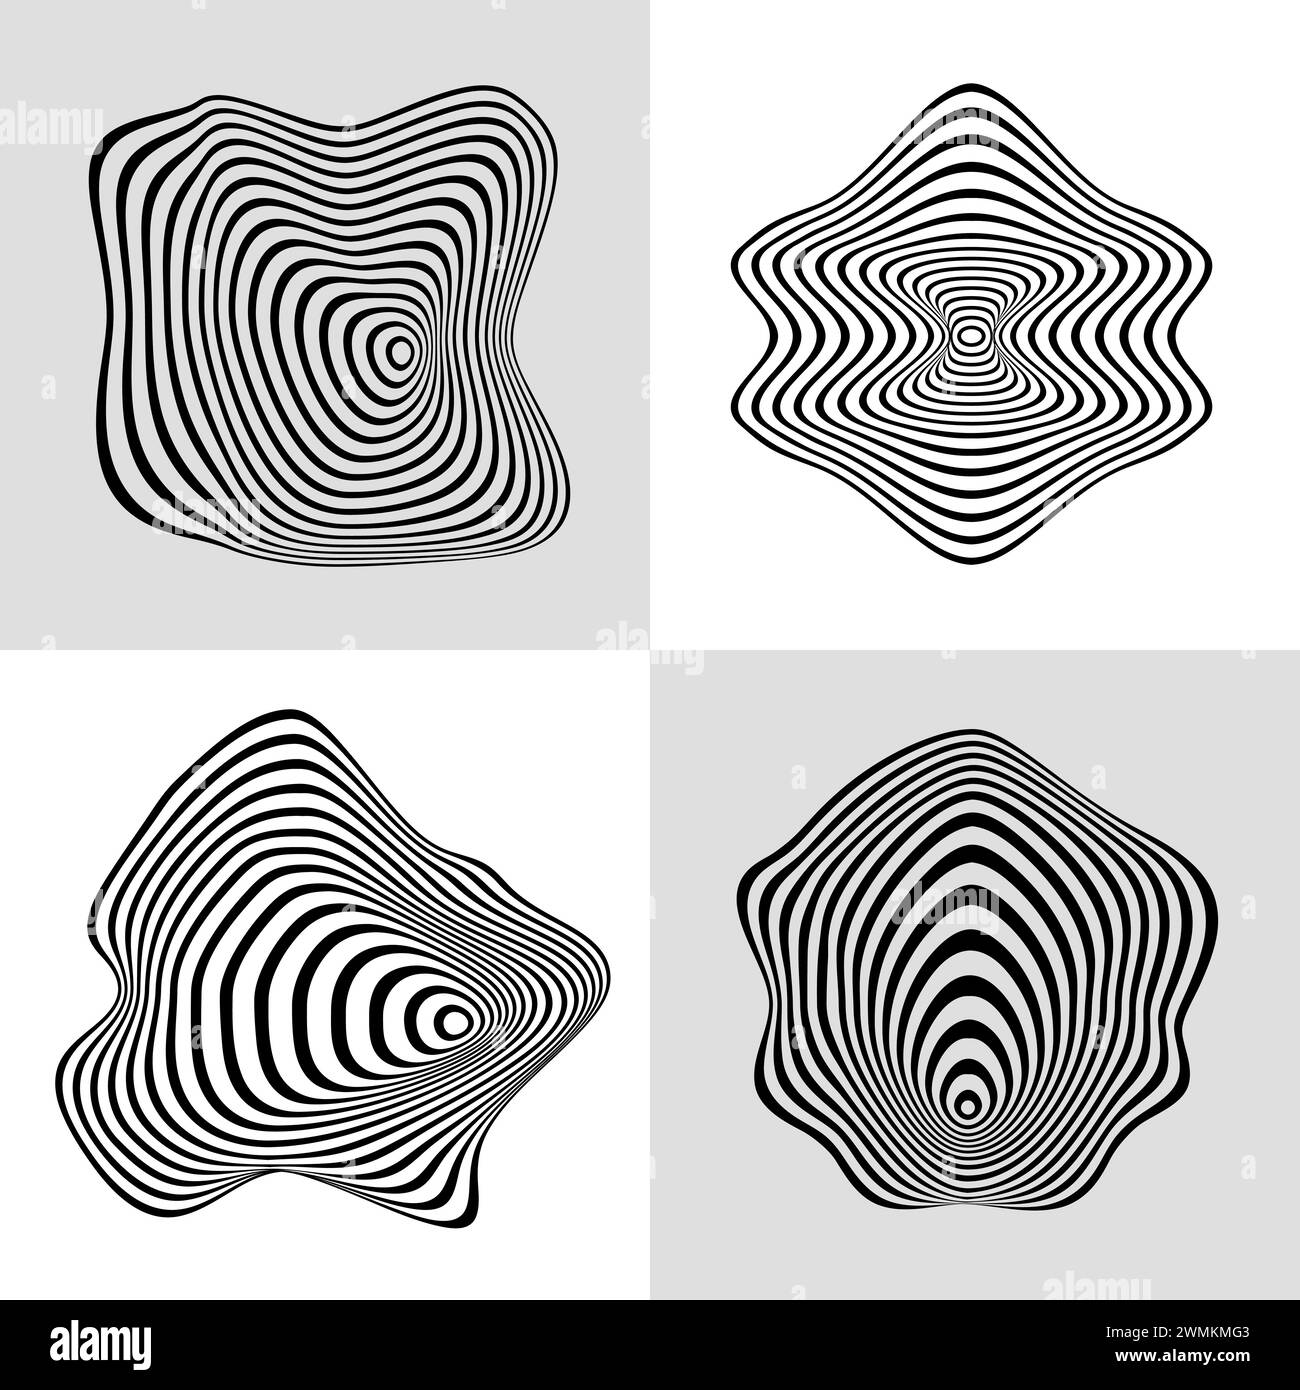 Vektorillustration des modernen welligen flüssigen nahtlosen Musters der abstrakten fluiden Linien im Stil der Tapetenabdeckung Vorlage Stock Vektor